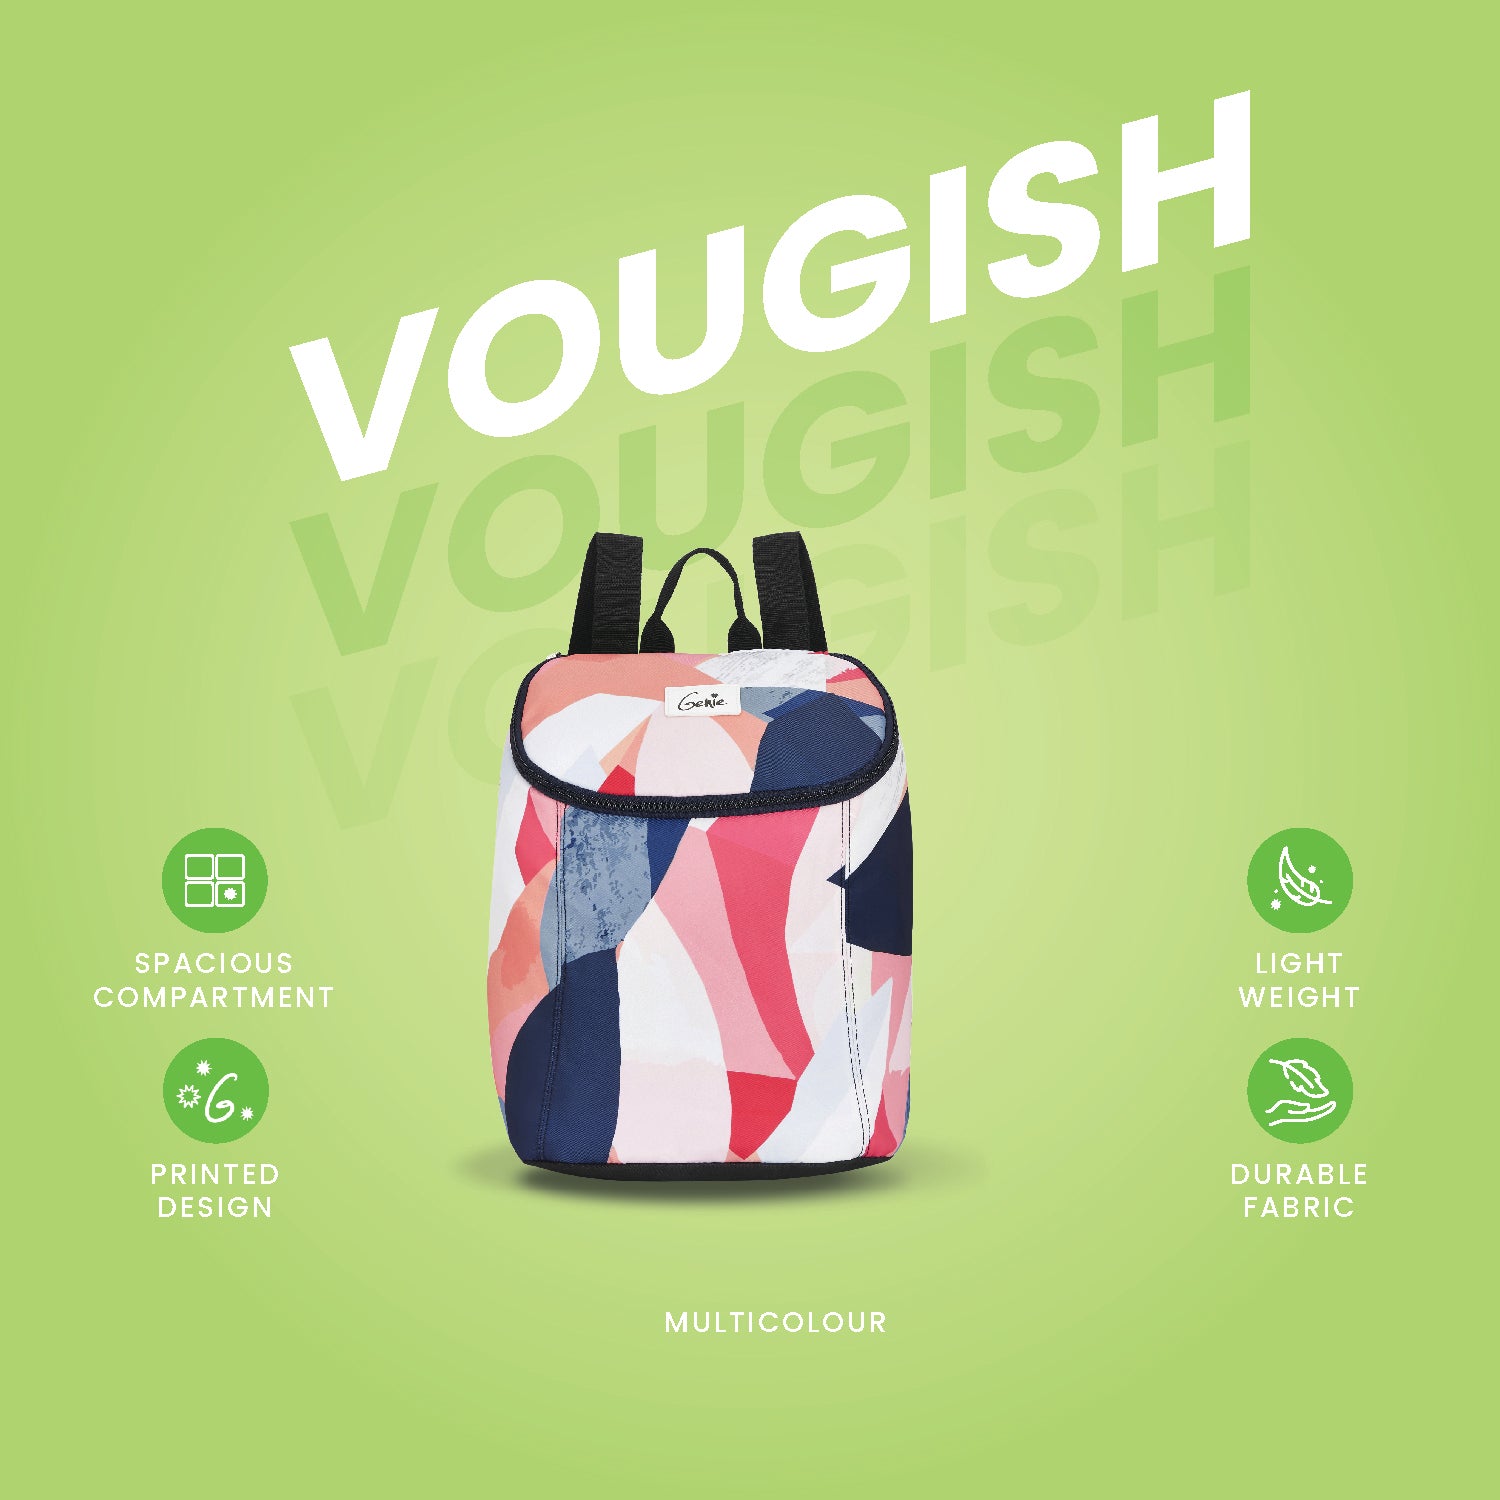 Vougish Small Daypack - Multicolor